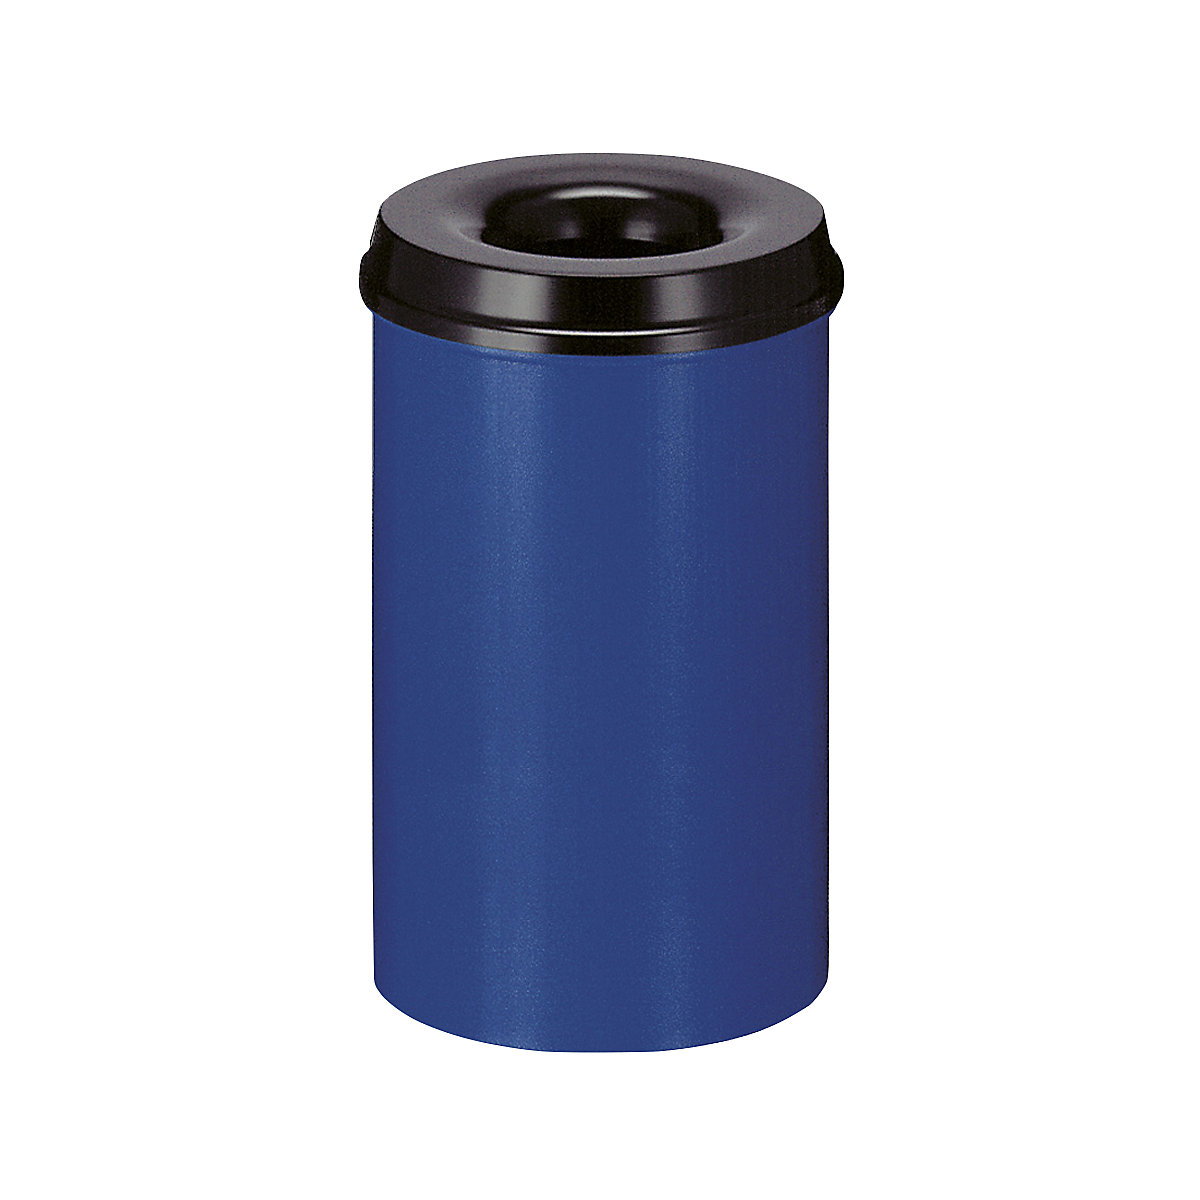 Önoltó papírkosár, űrtartalom 20 l, ma x Ø 426 x 260 mm, ház kék / oltófedél fekete színben